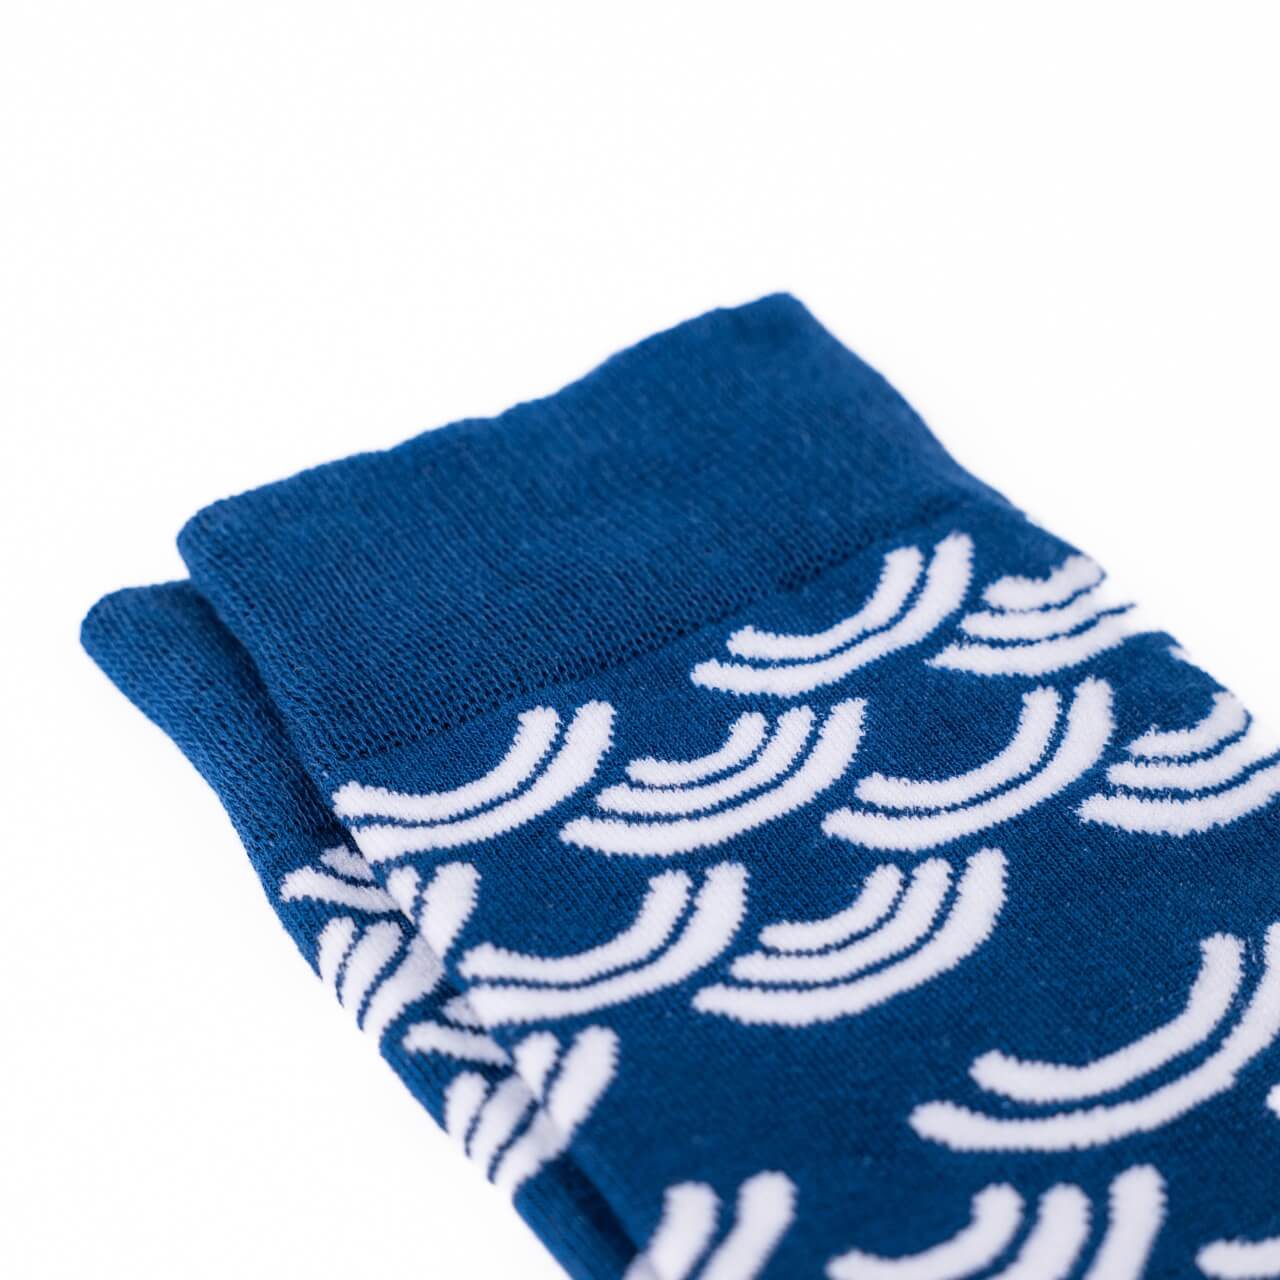 blue dress socks